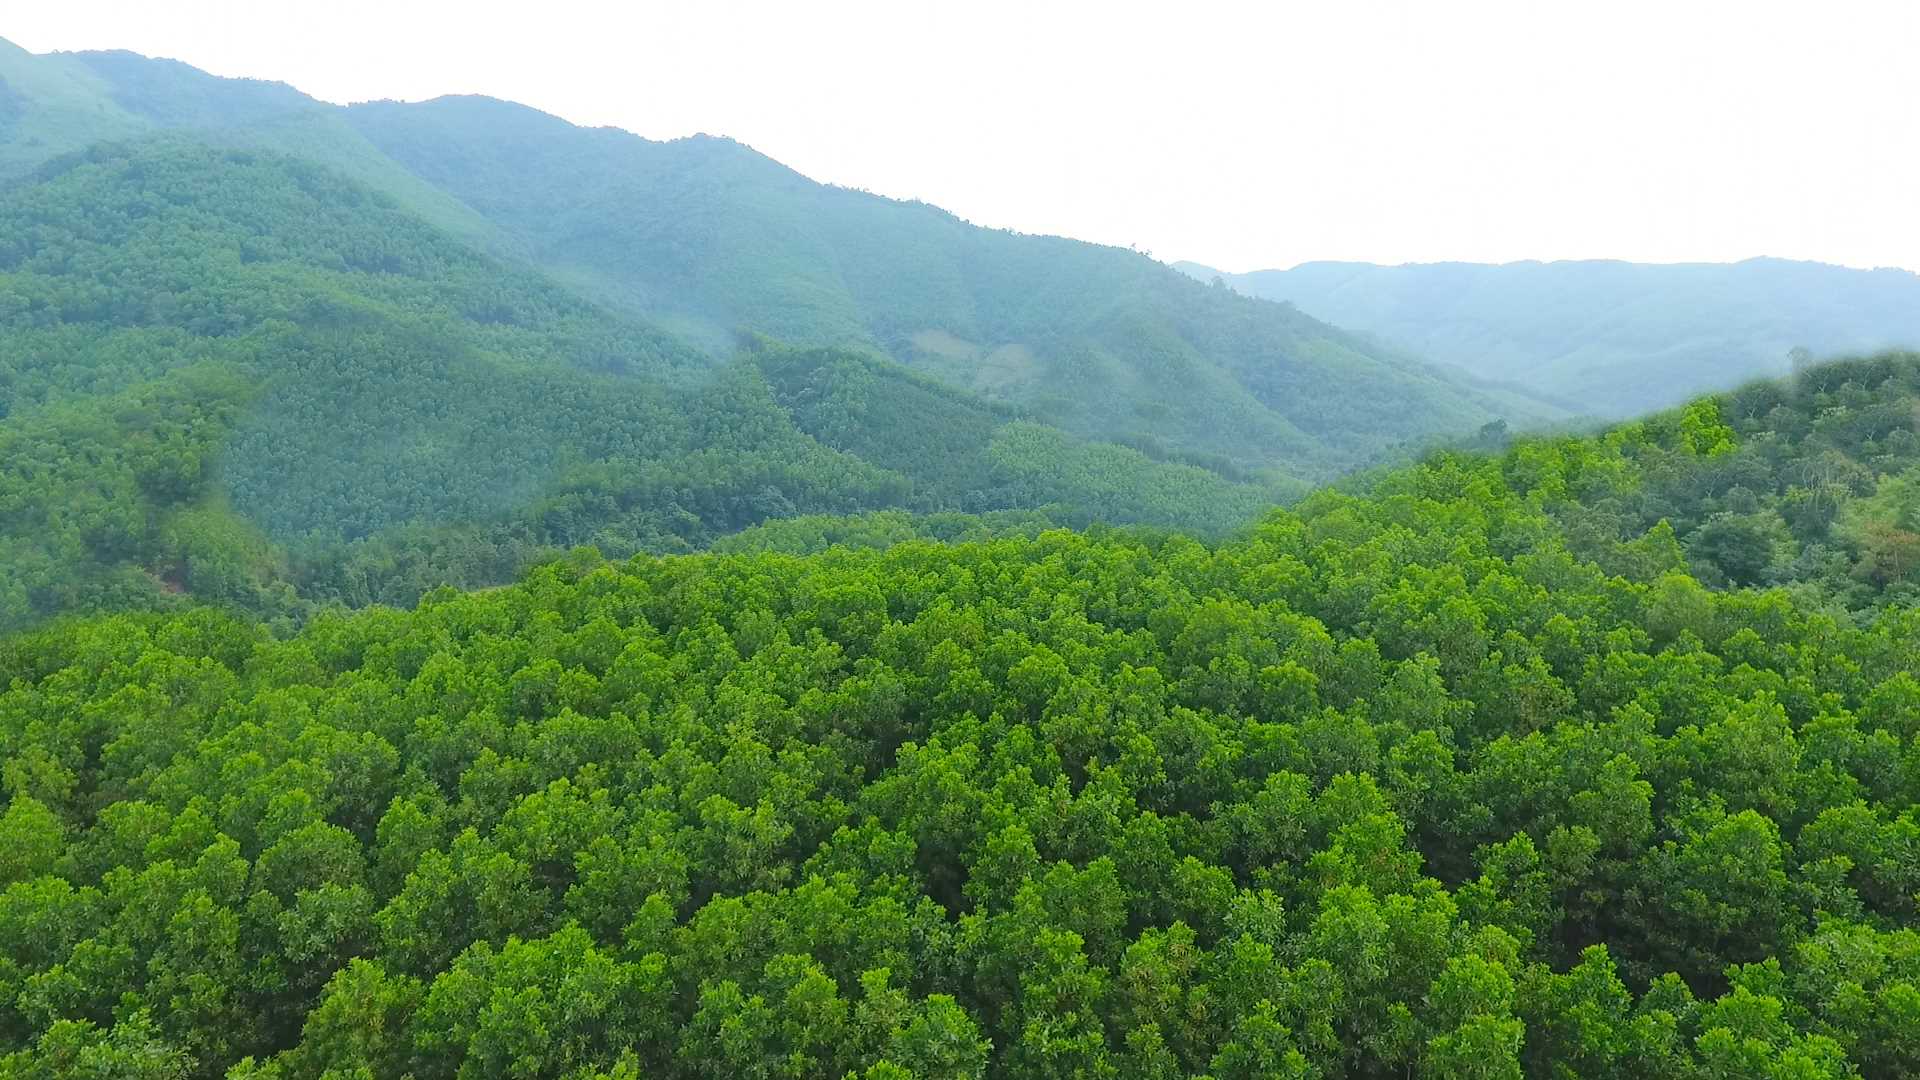 Nhờ làm tốt công tác trồng, chăm sóc và bảo vệ rừng, tỉ lệ che phủ rừng của huyện Ba Chẽ đến hết năm 2020 đạt 72%.